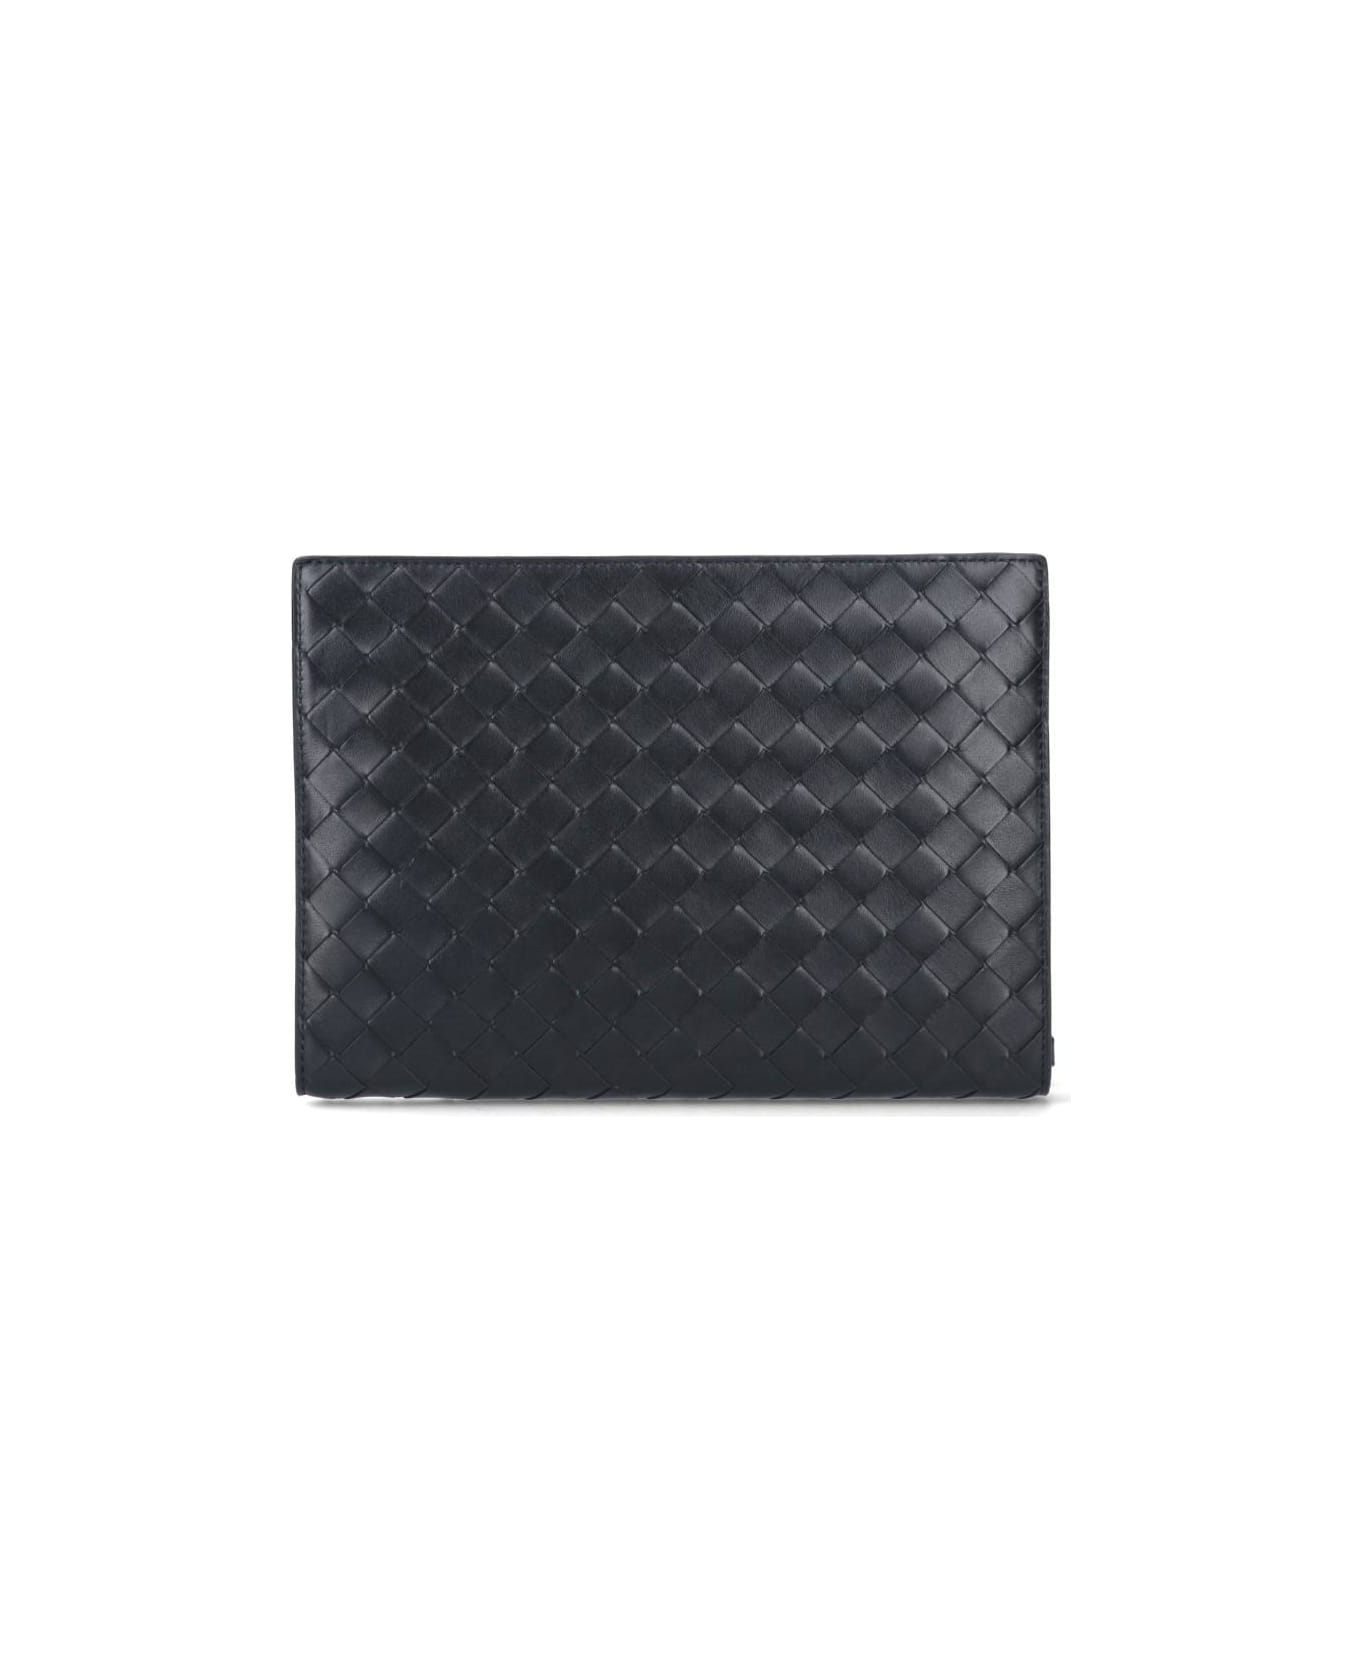 Bottega Veneta Classic Briefcase - Black トラベルバッグ